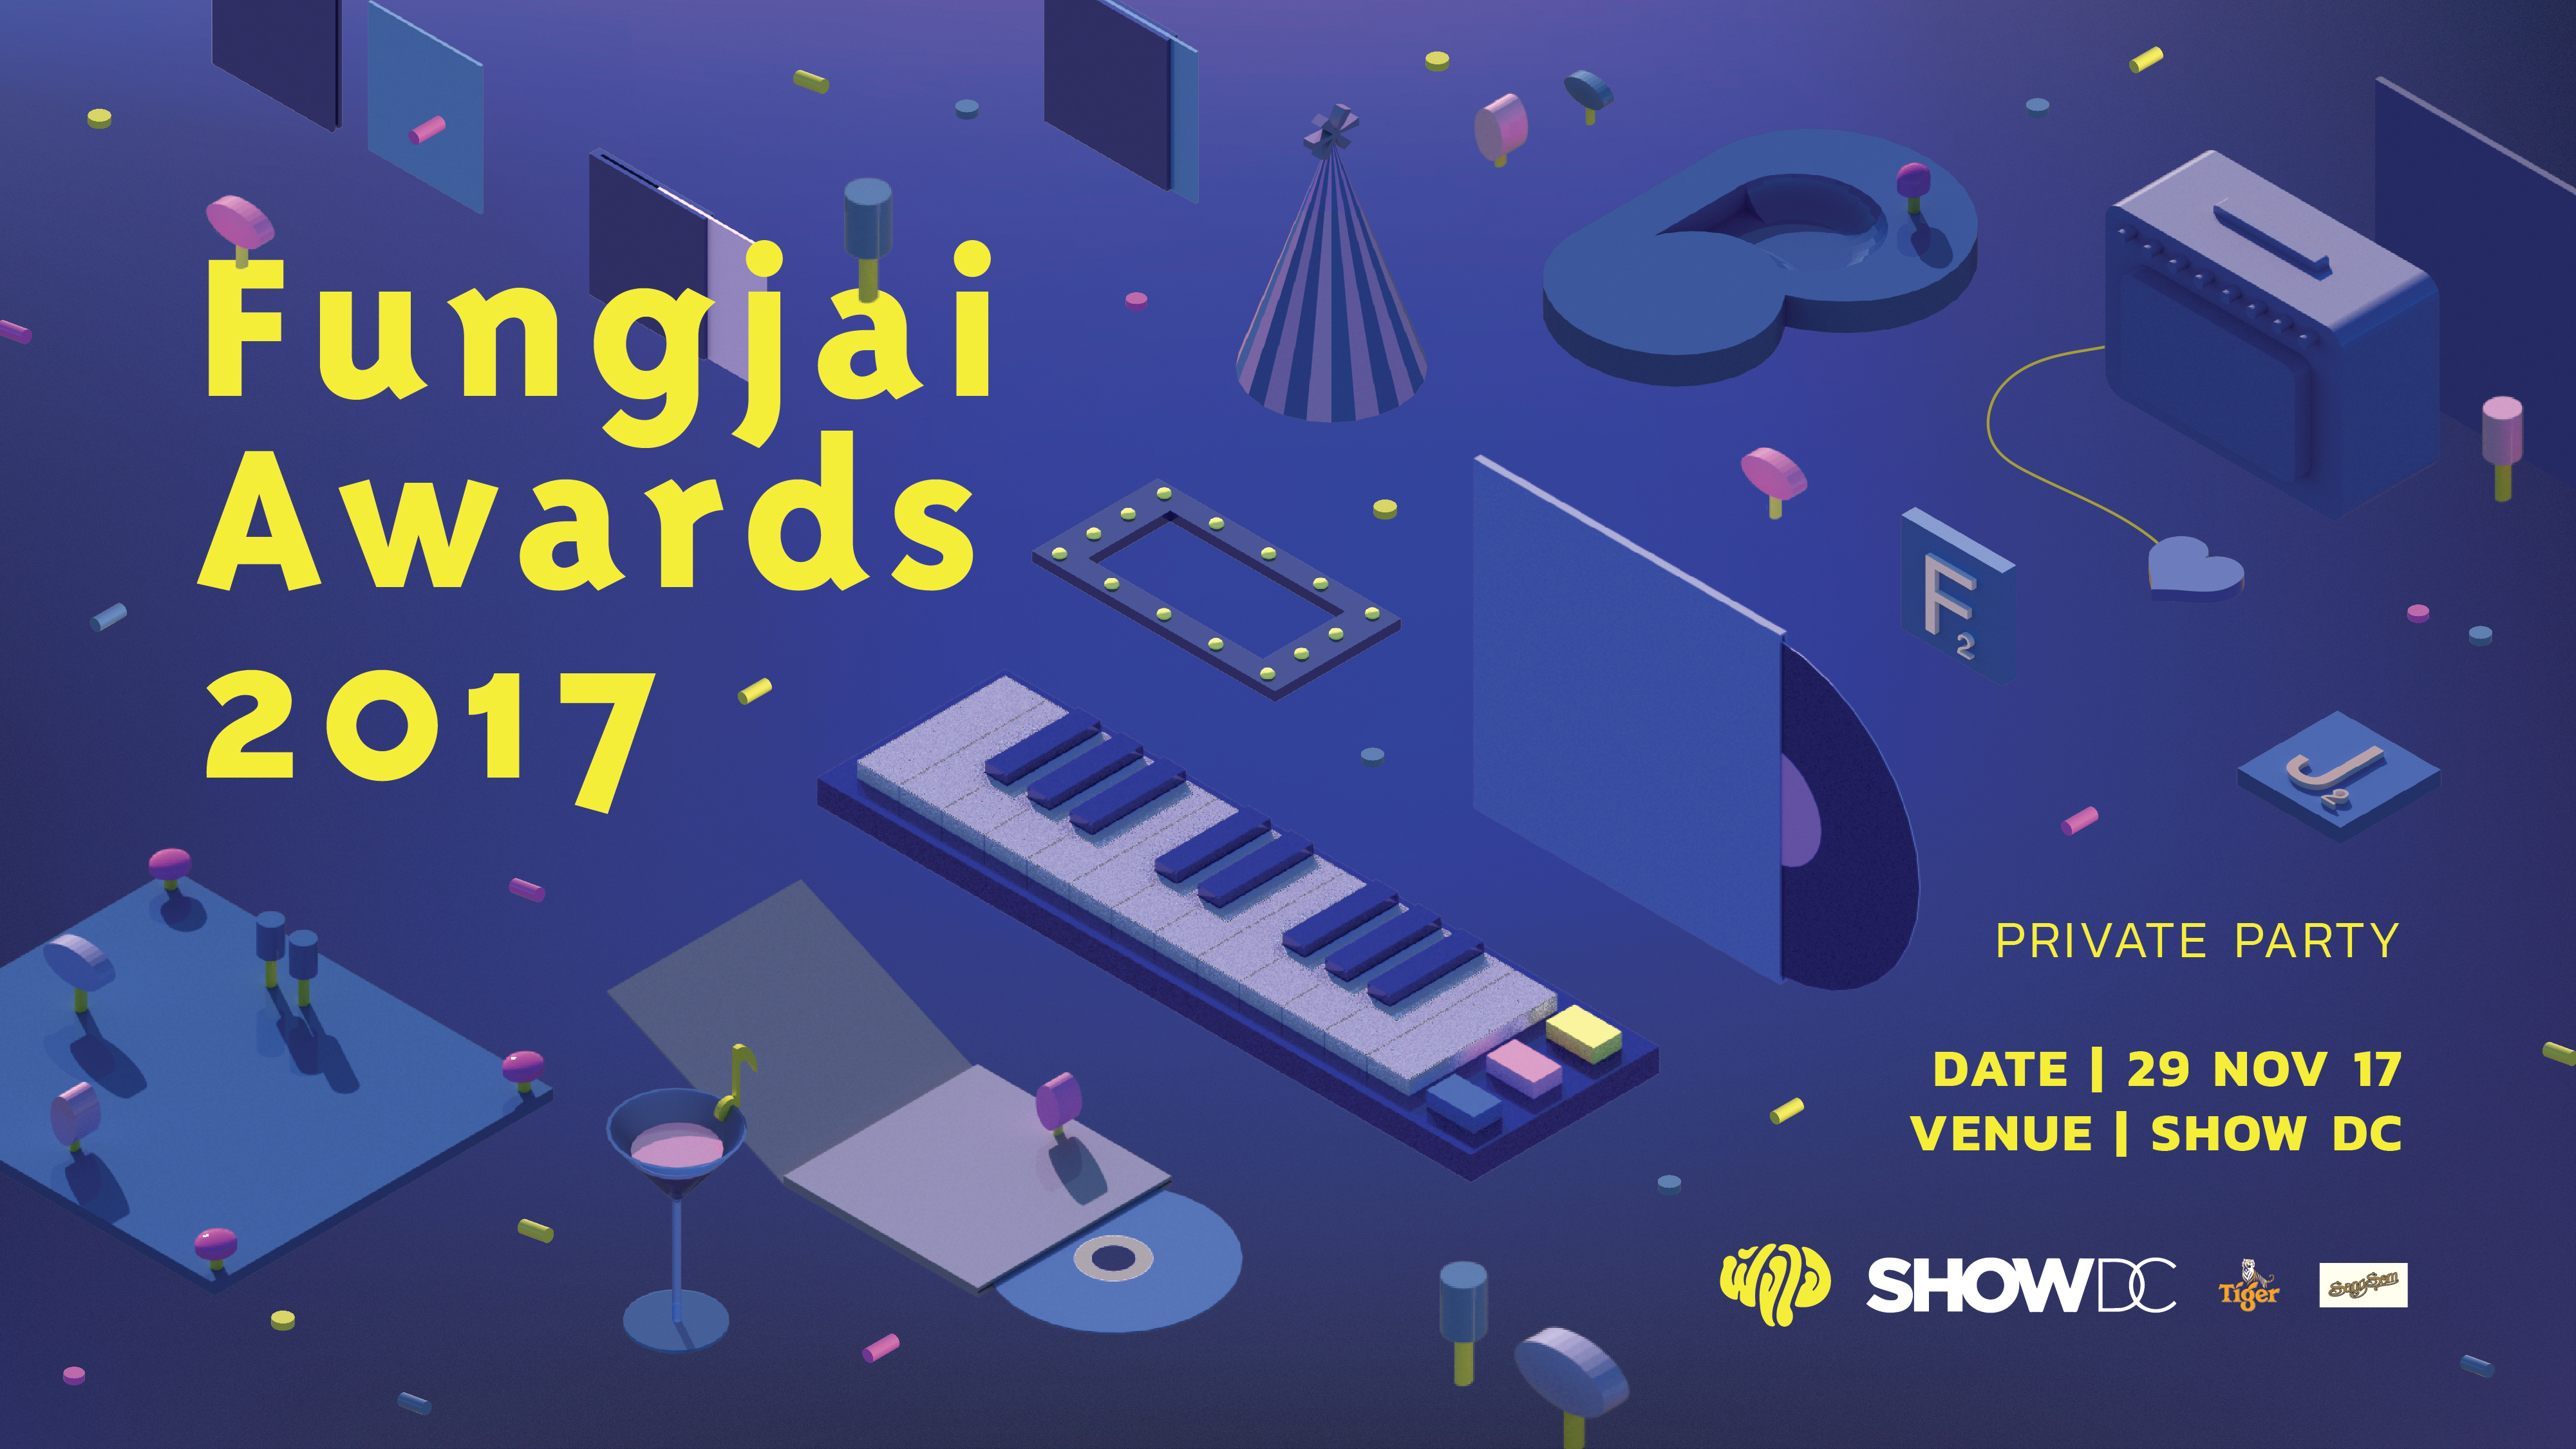 Fungjai Awards 2017 งานประกาศรางวัล เพื่อชุมชนคนดนตรี ที่สร้างสรรค์ผลงานดีในปี 2017